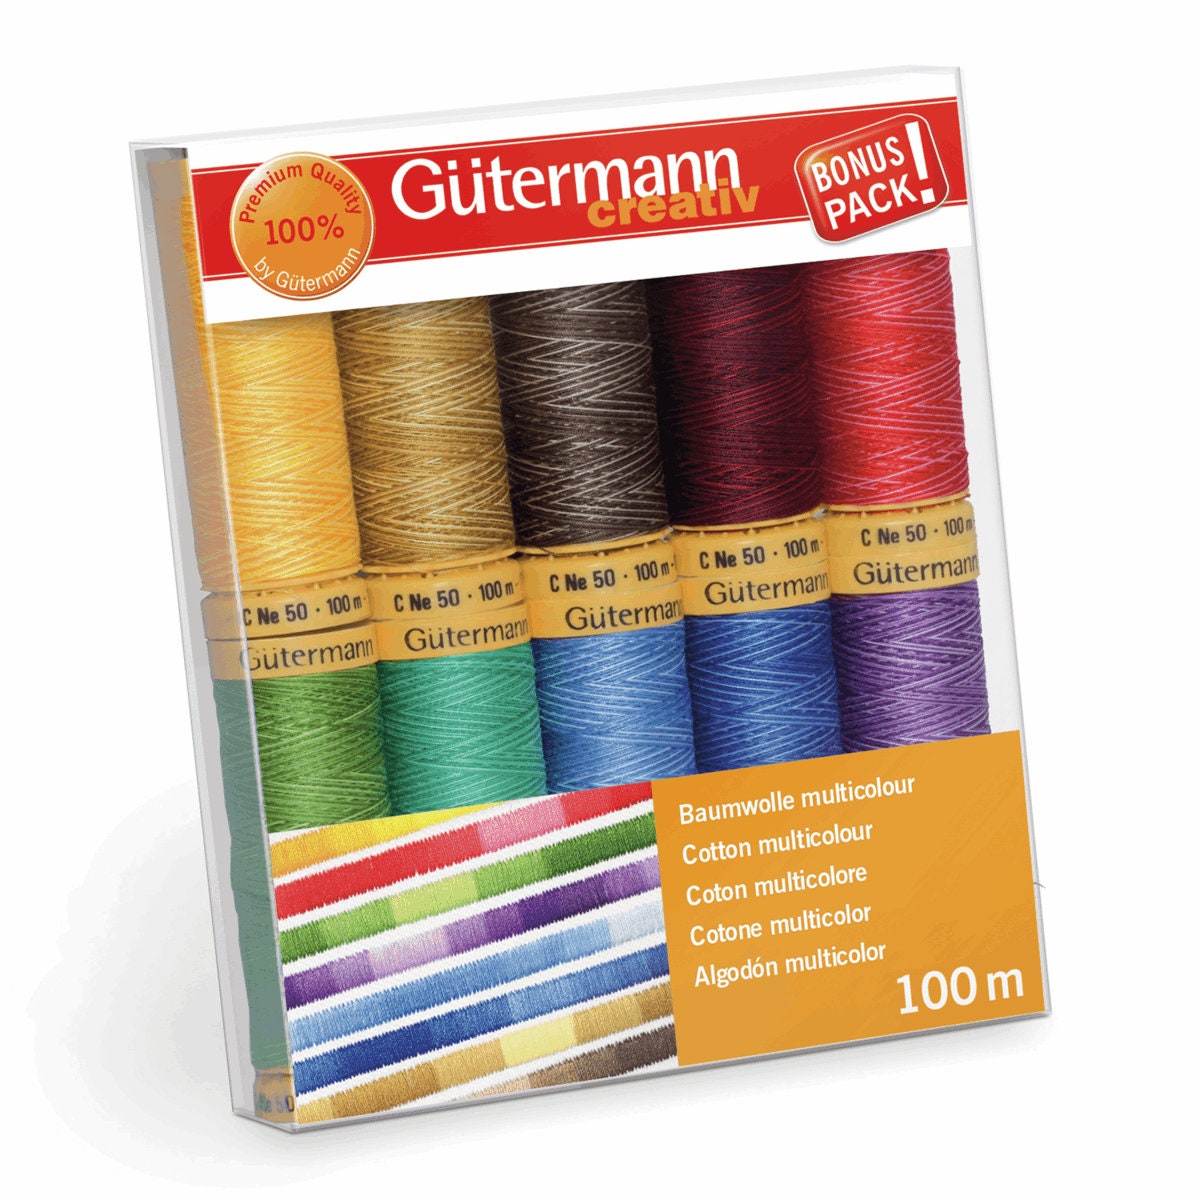  Gutermann Thread Set 100m x 10 reels with Prym Sewing